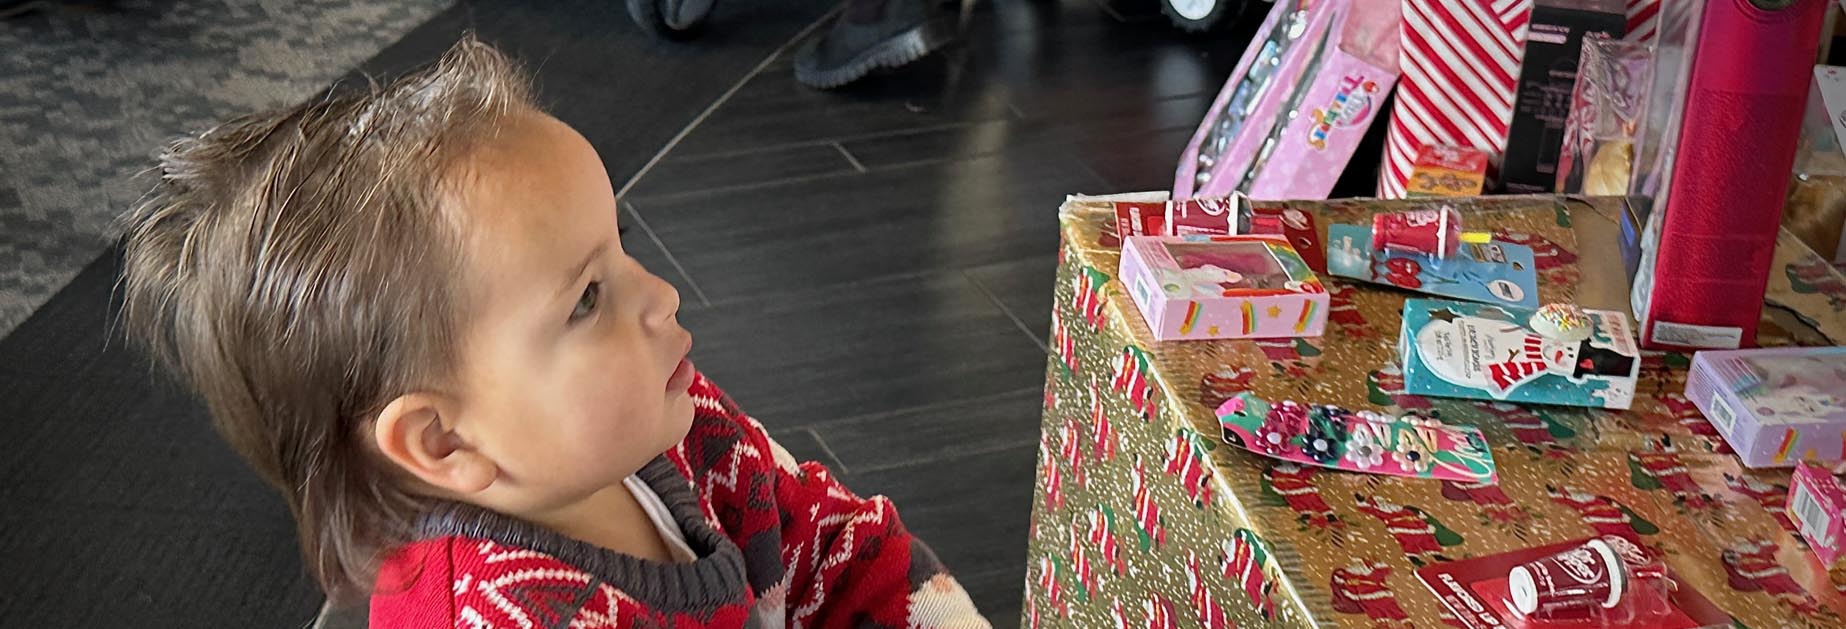 लपेटे हुए उपहारों के बगल में एक छोटा बच्चा